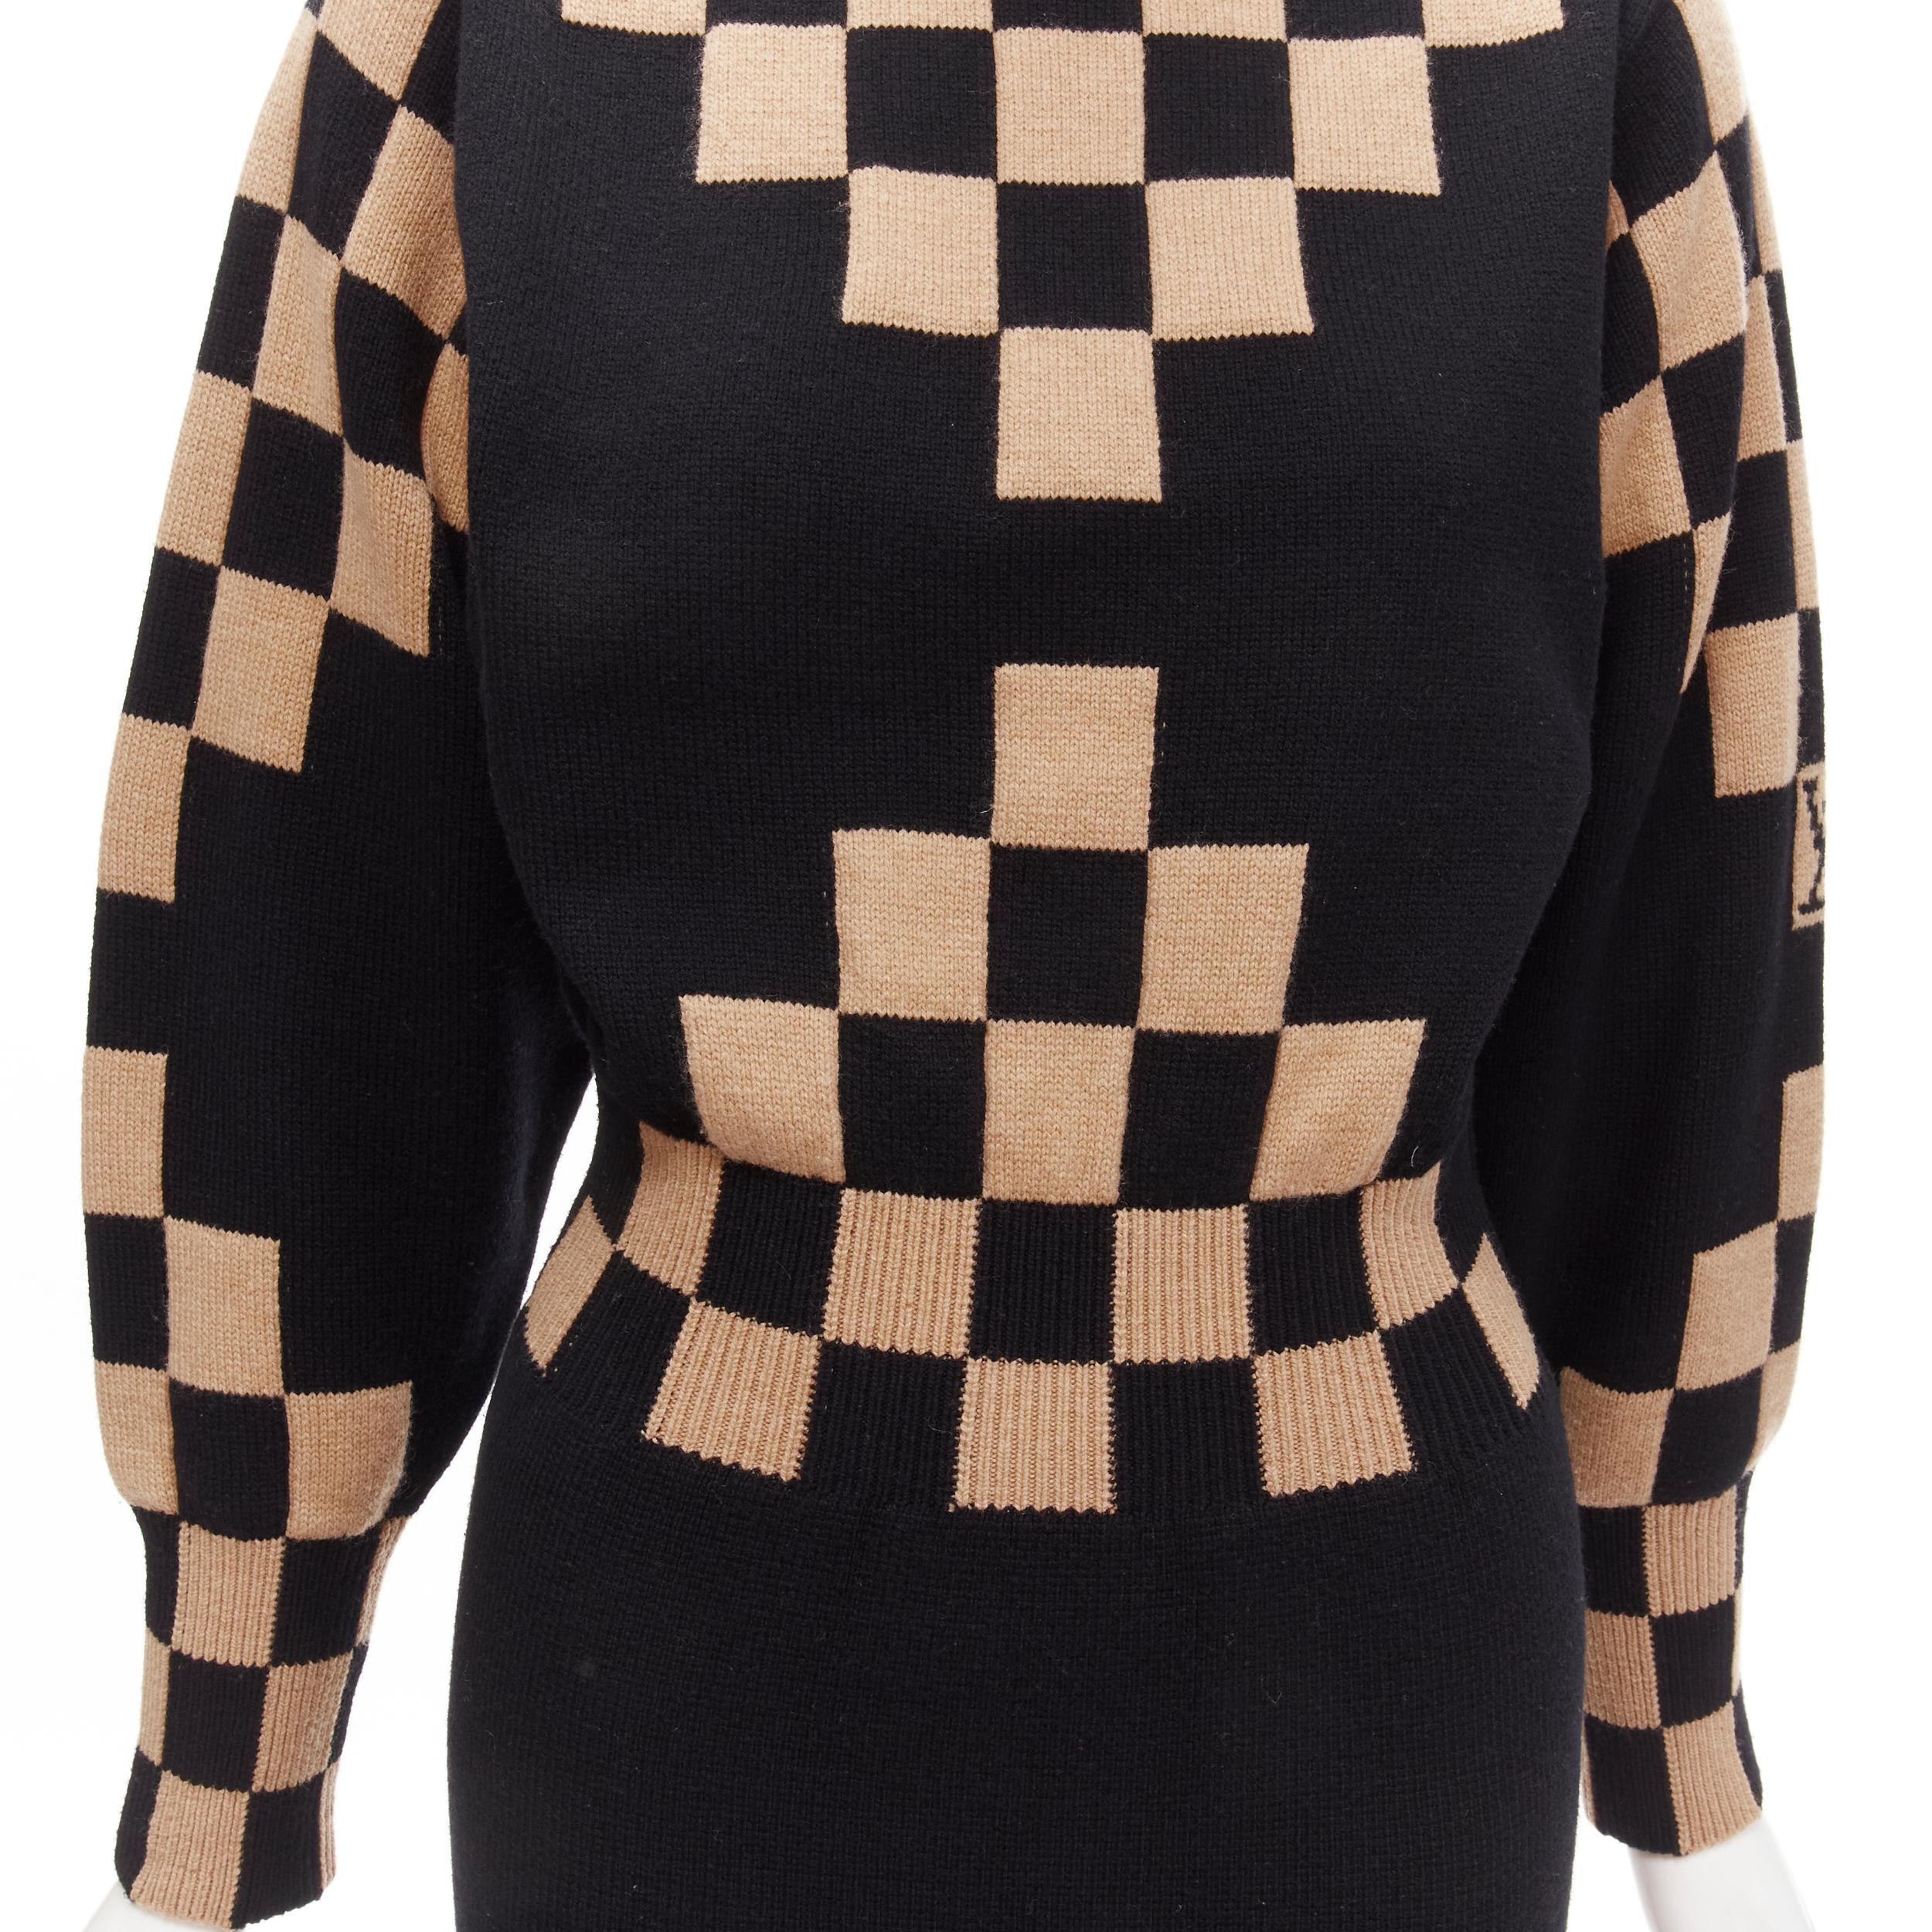 LOUIS VUITTON LV Damier wool cashmere pixel illusion knit dress S For Sale 2